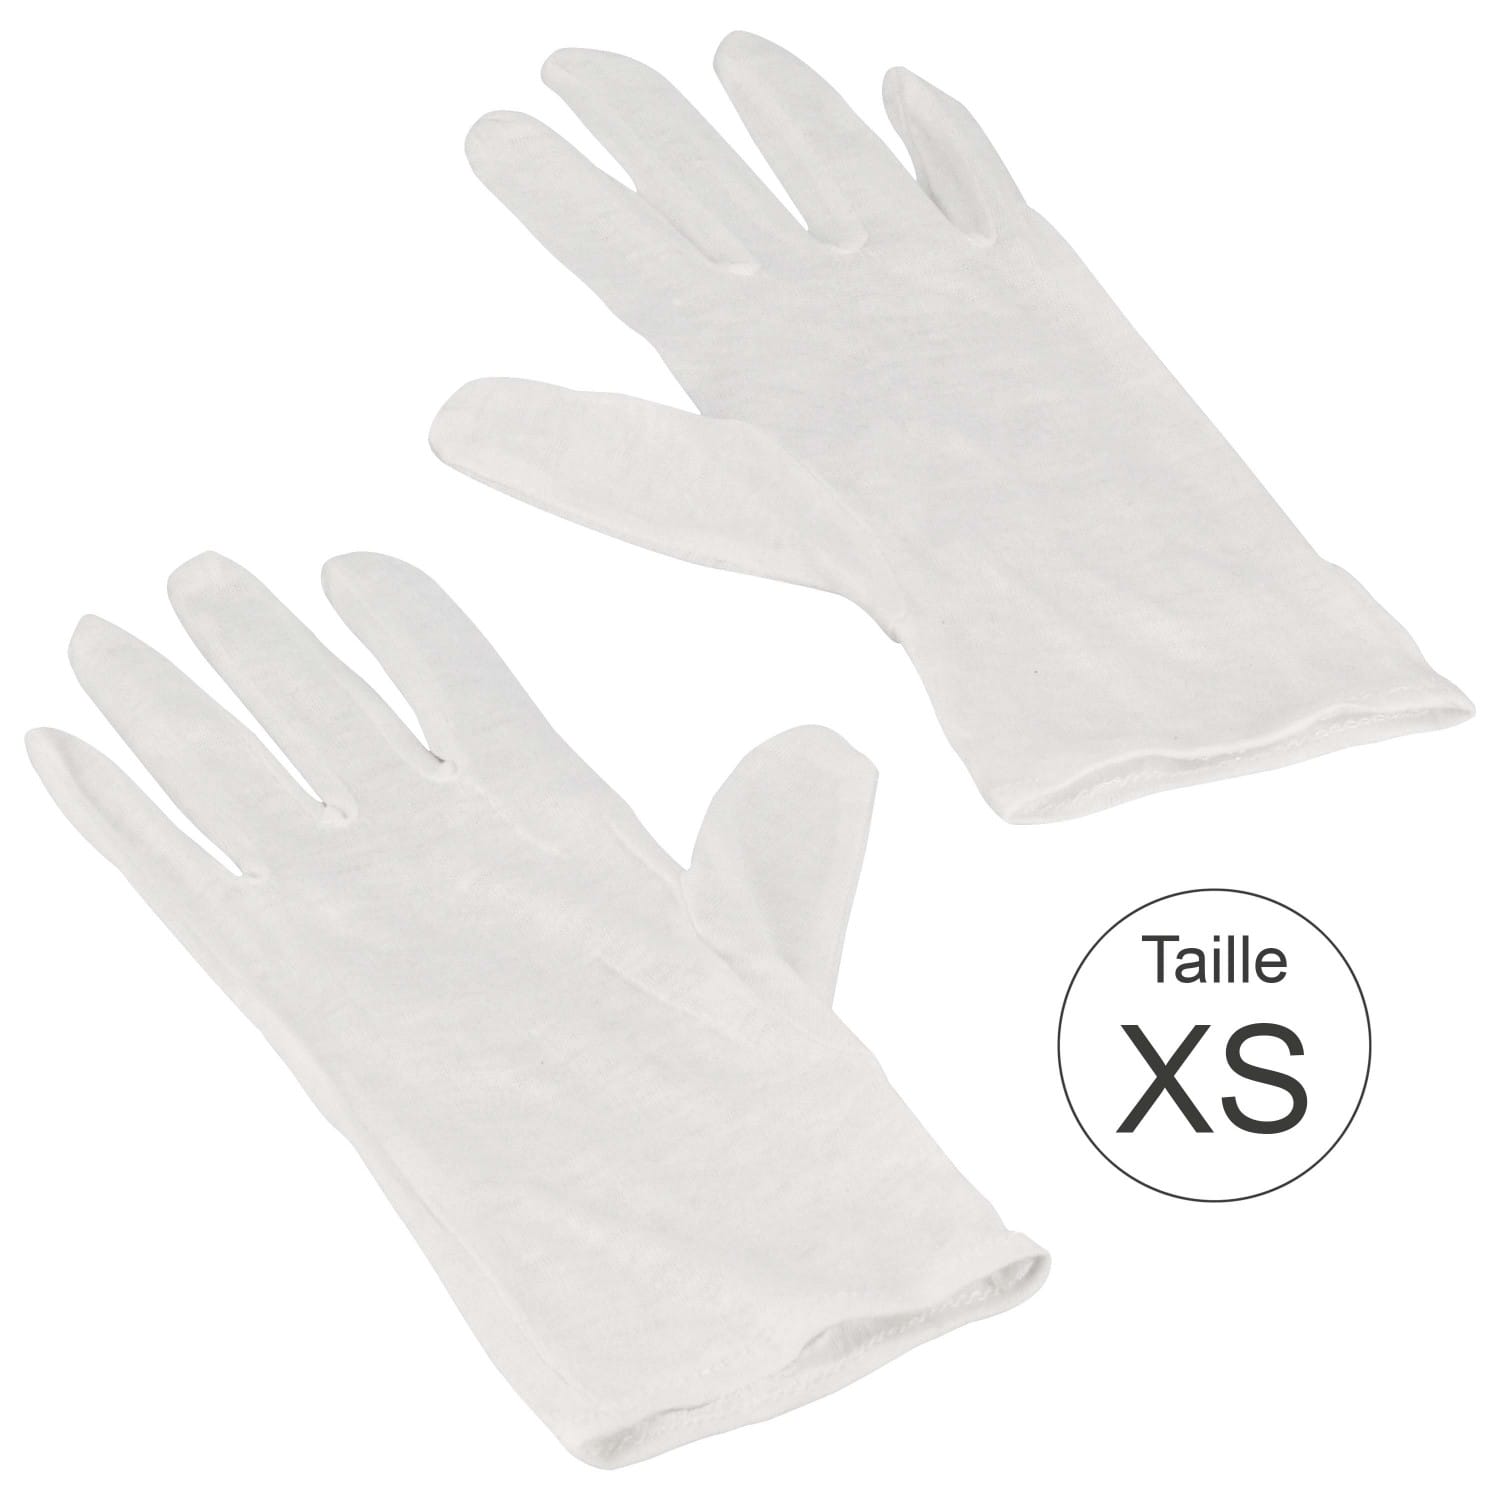 Gants blanc 100% coton naturel - Haute qualité - Taille XS (7,5) - La paire